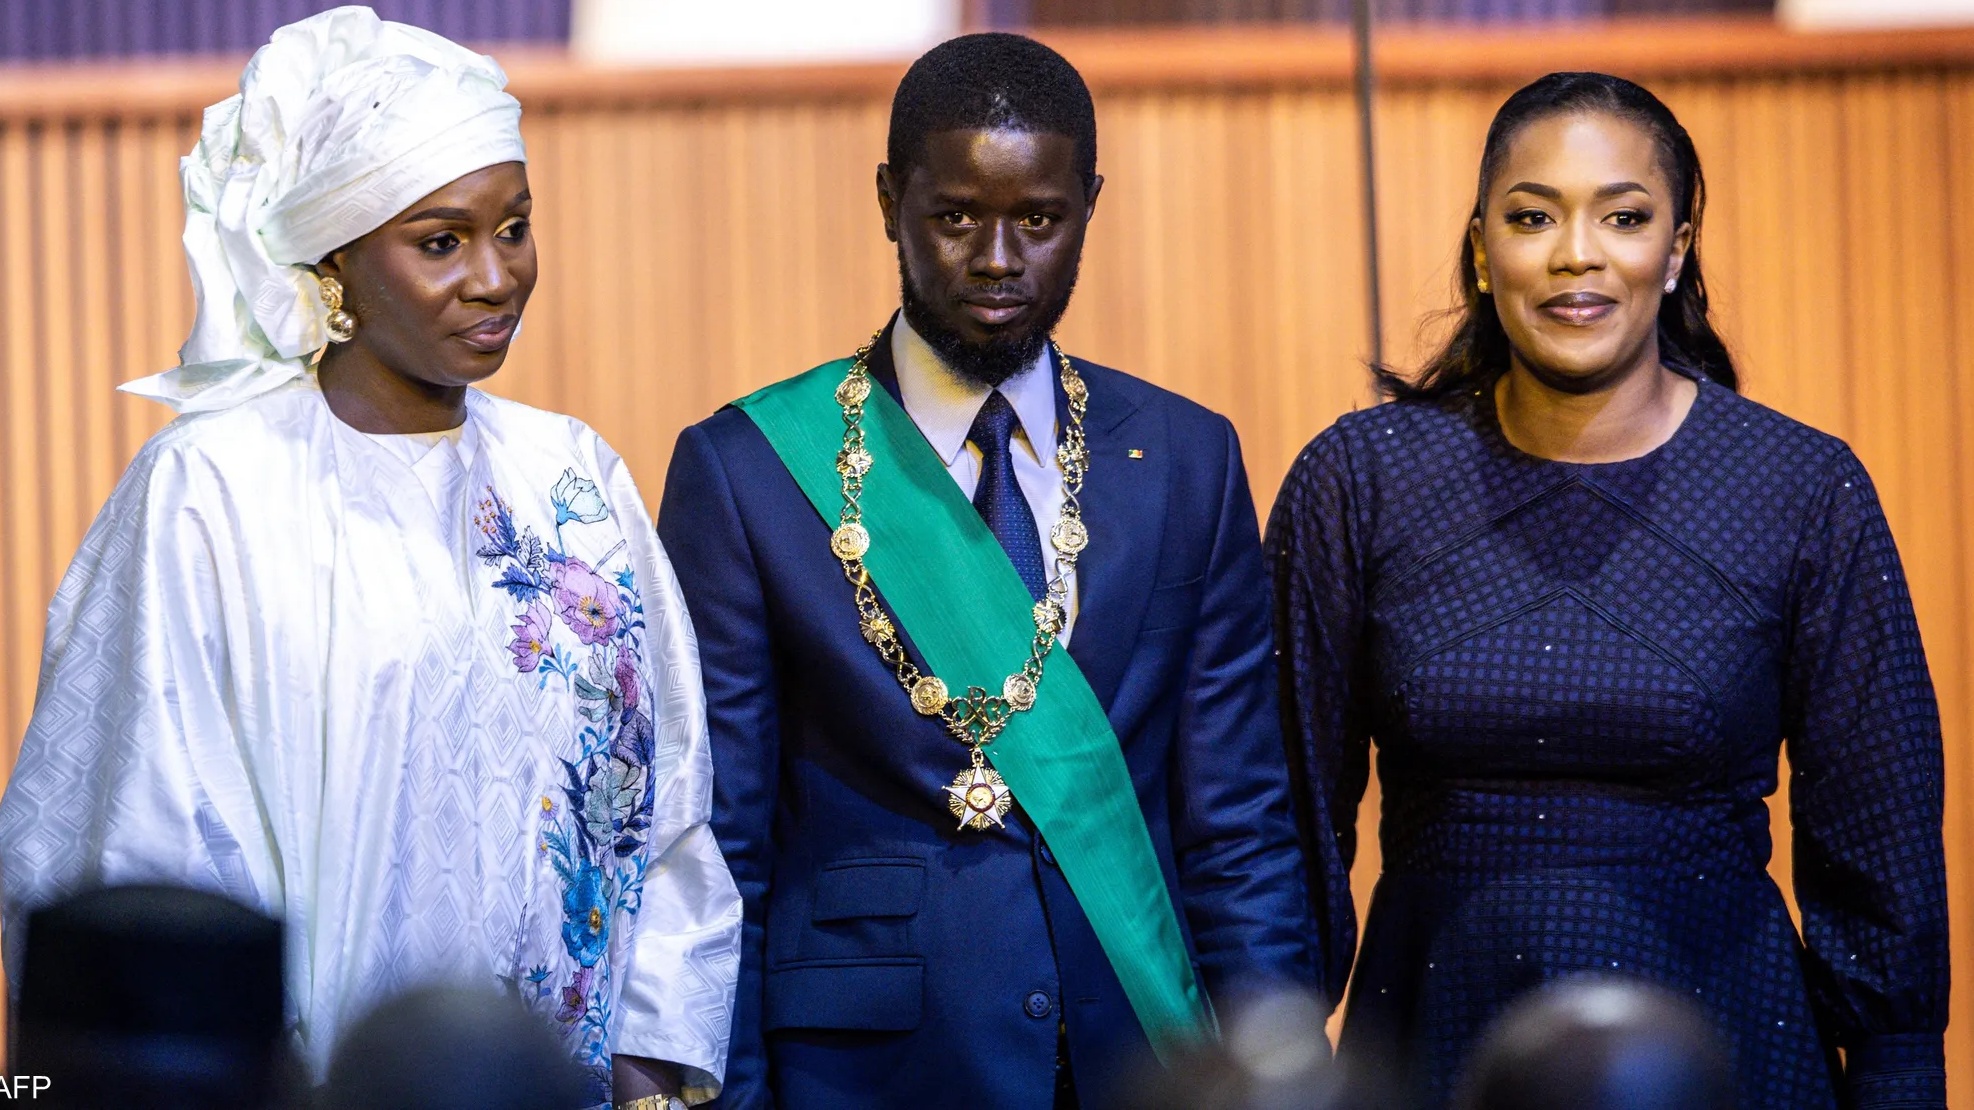 الرئيس السنغالي مع الزوجتين عبسة فاي و ماري خون فاي أثناء تأدية اليمين رئيساً للبلاد